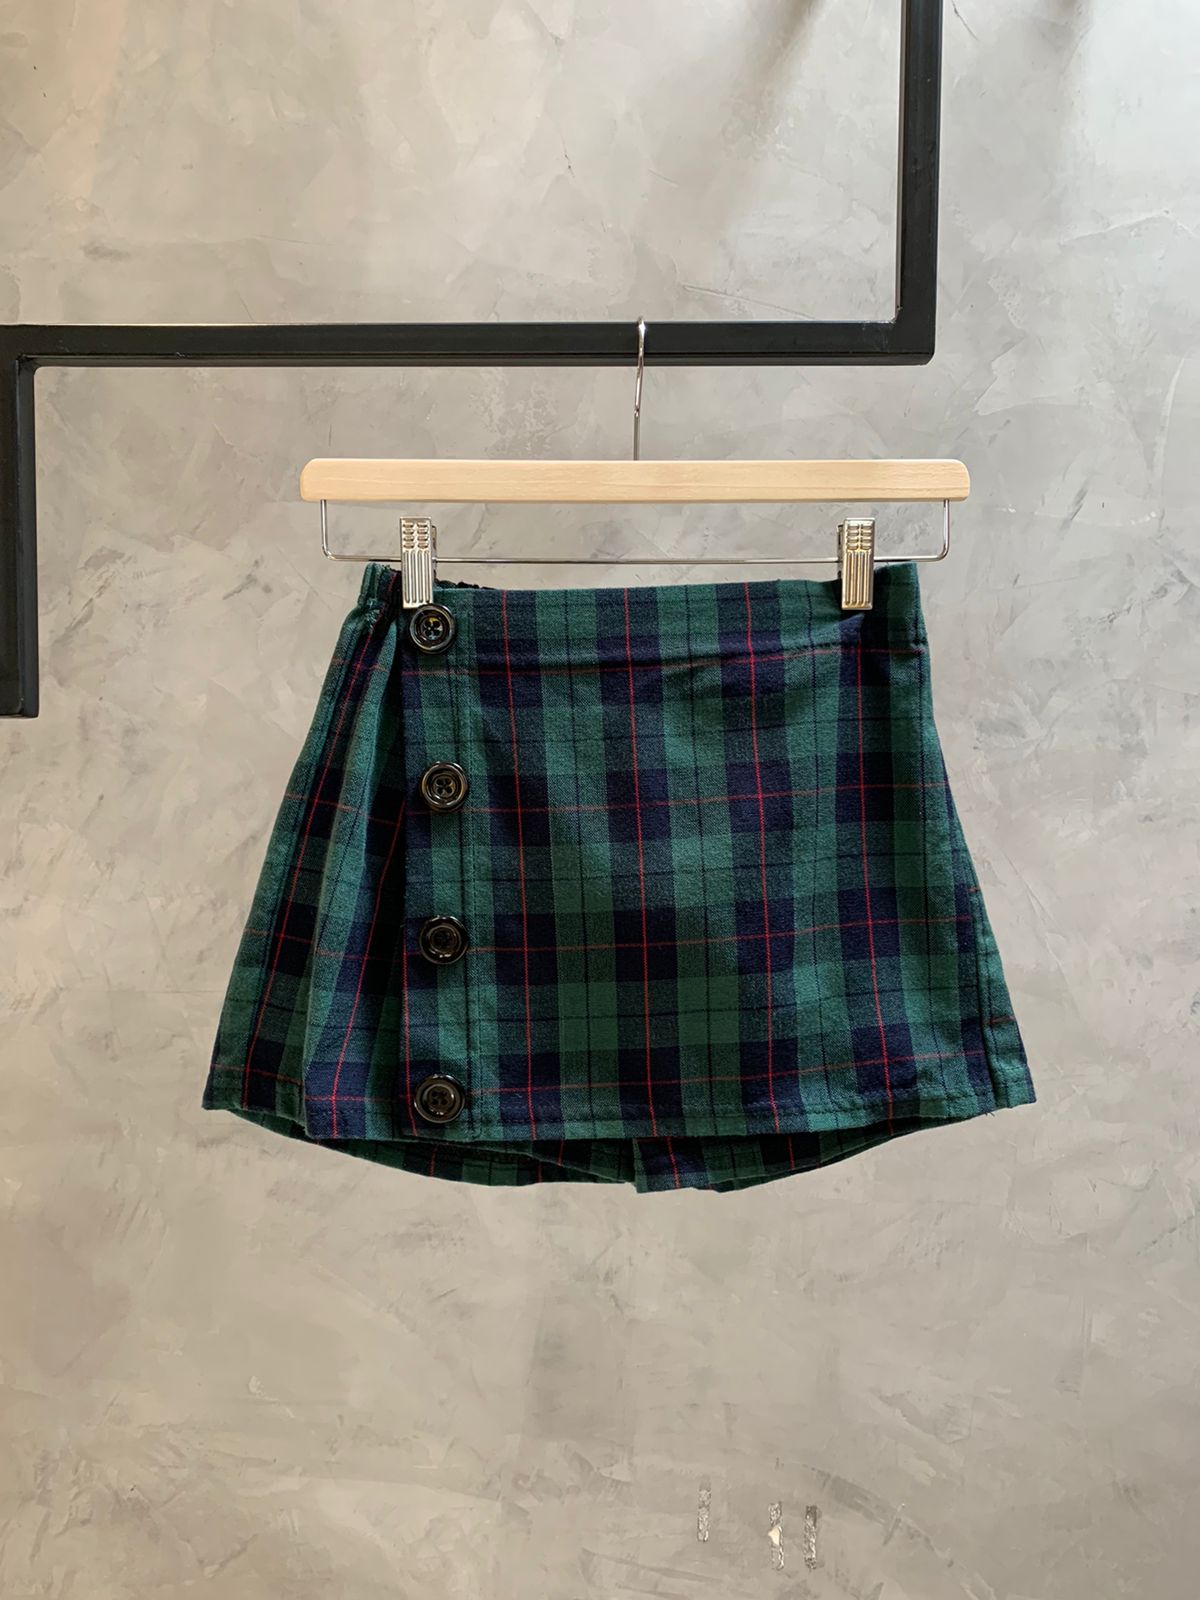 Plaid Shorts Skirt.